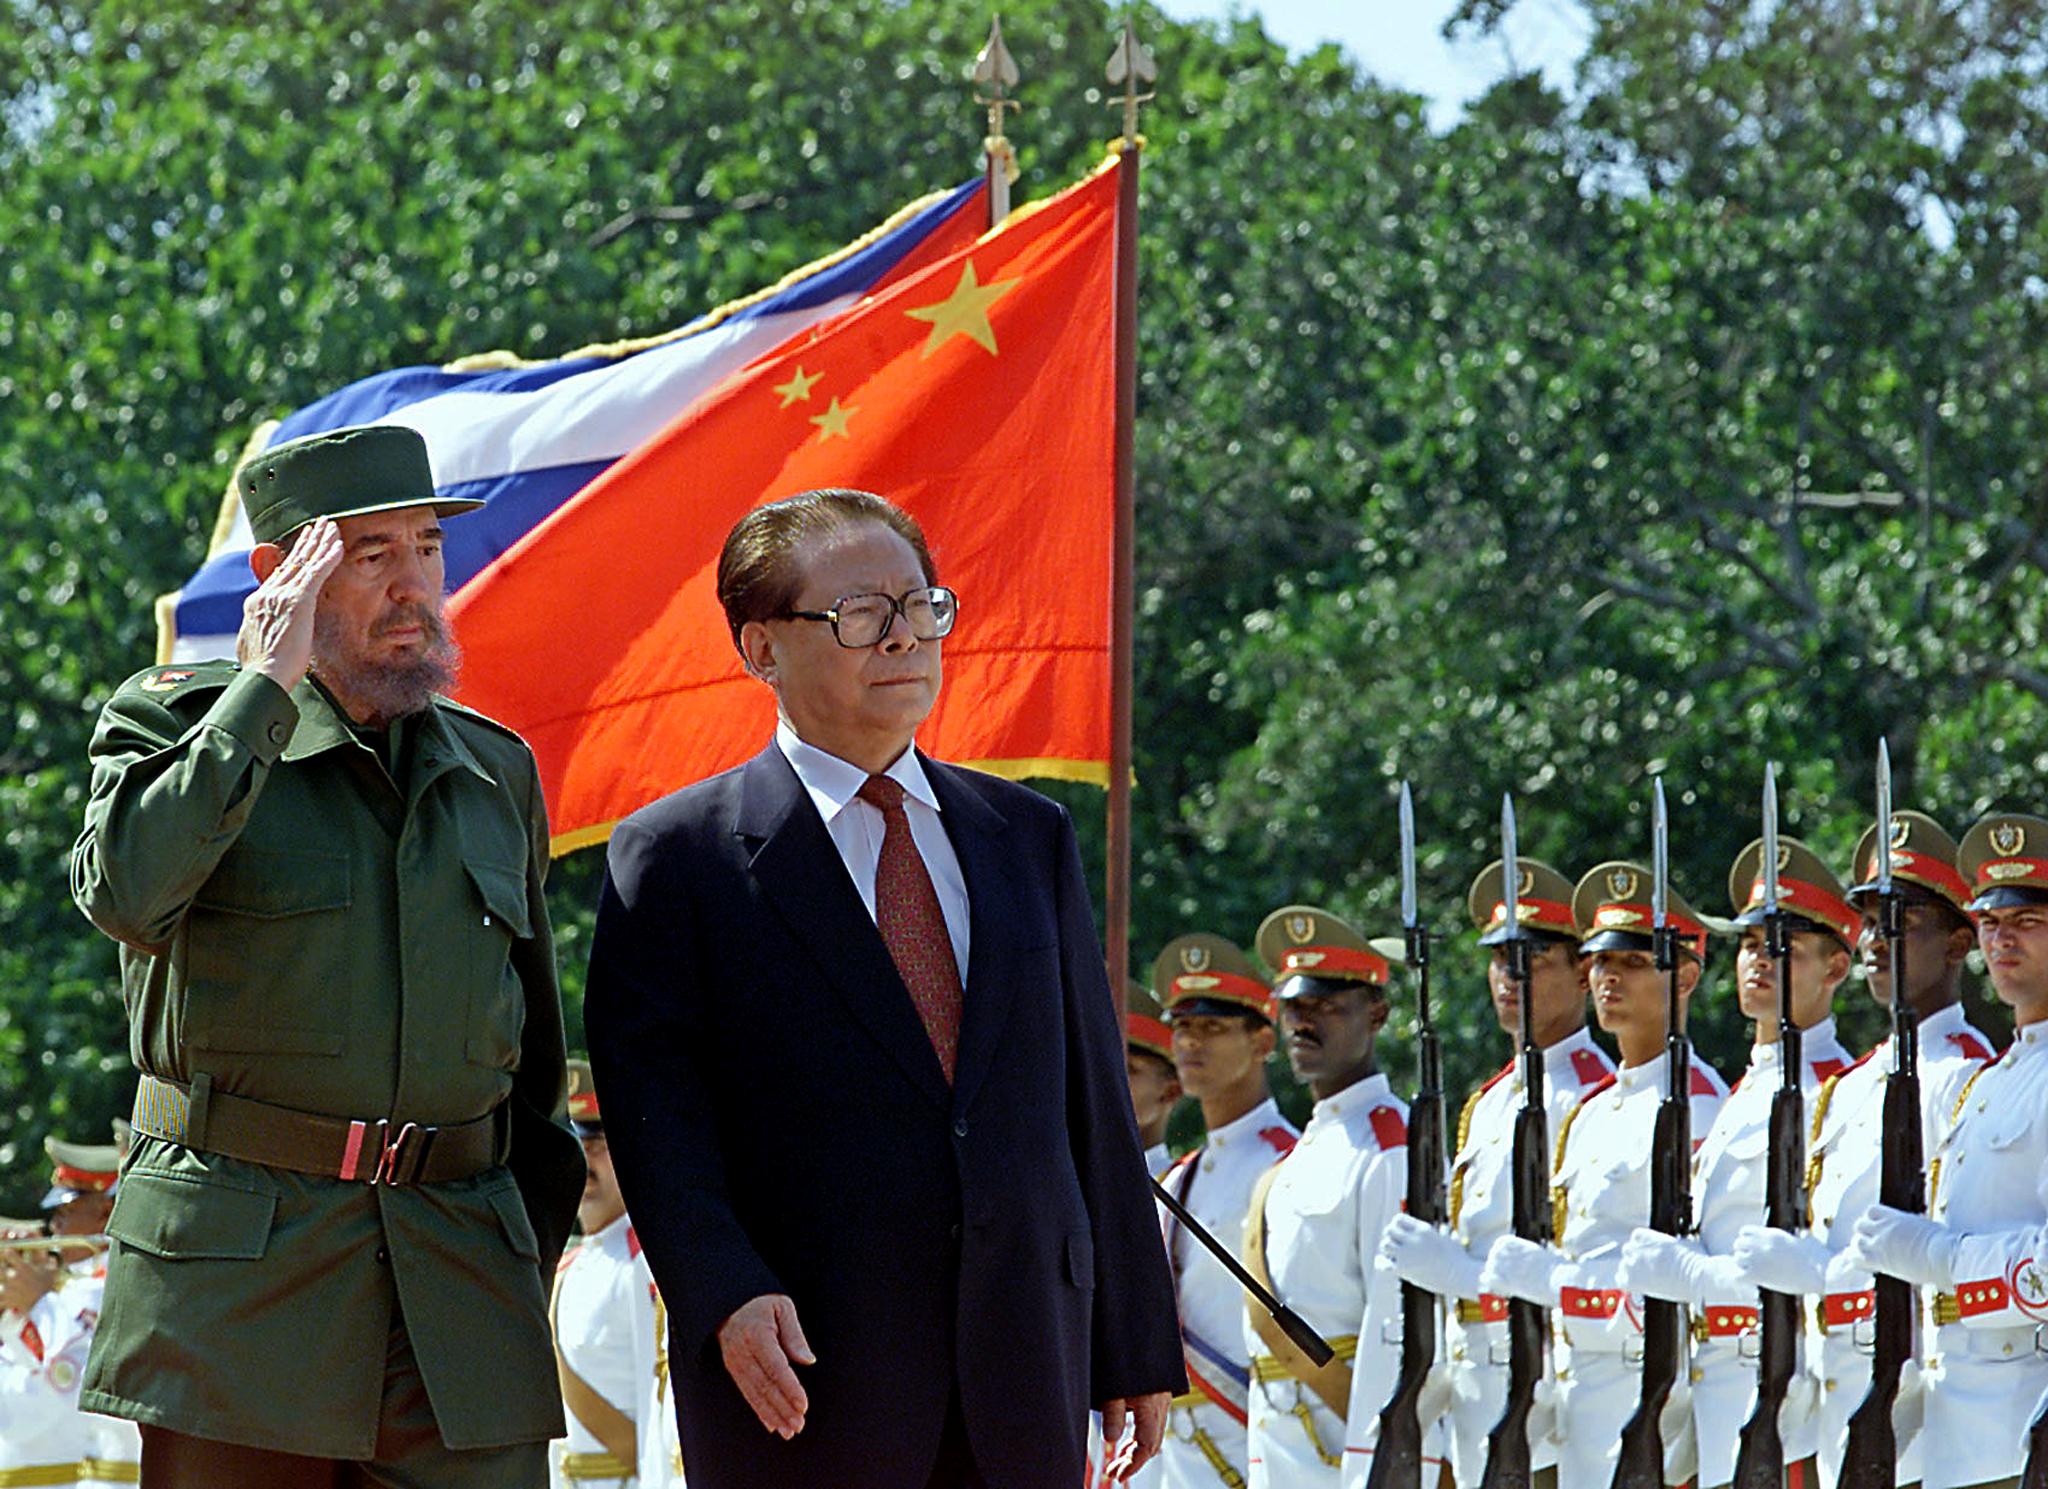 ฟิเดล คาสโตร กับอดีตประธานาธิบดีเจียง เจ๋มหมินของจีน / (FILES) AFP PHOTO / ADALBERTO ROQUE